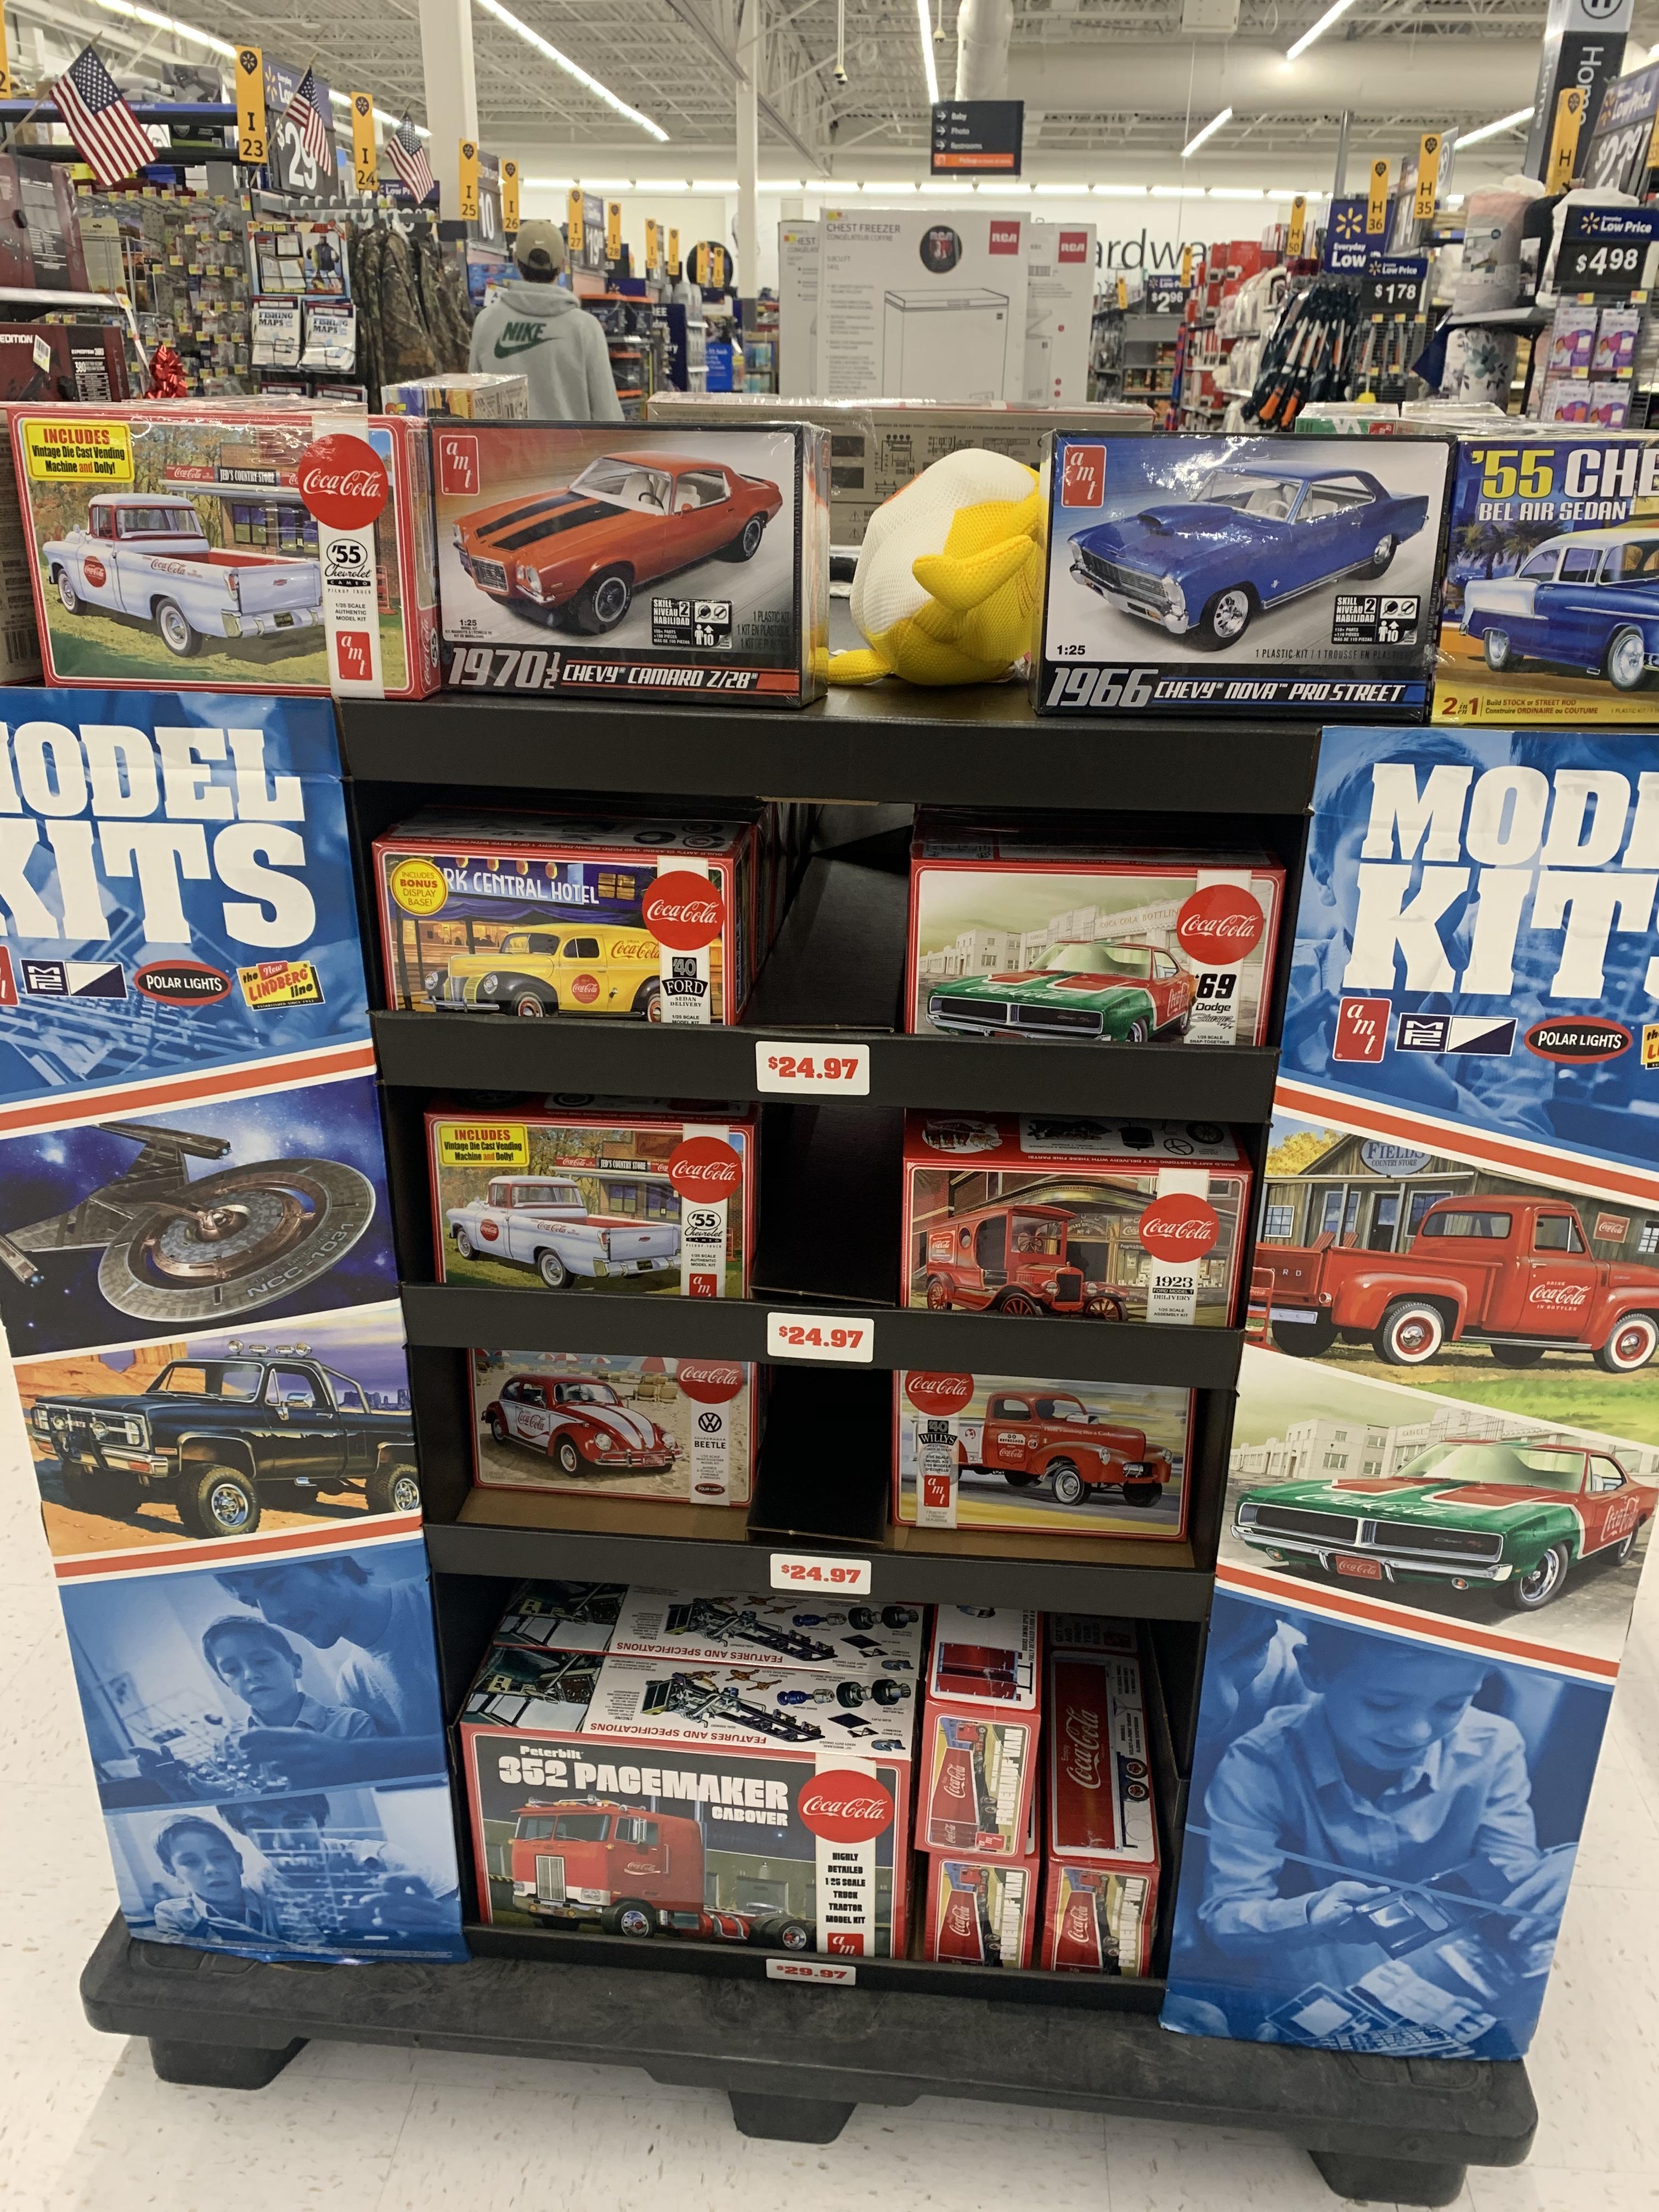 New kits at a Walmart near me. - General Automotive Talk (Trucks and Cars)  - Model Cars Magazine Forum